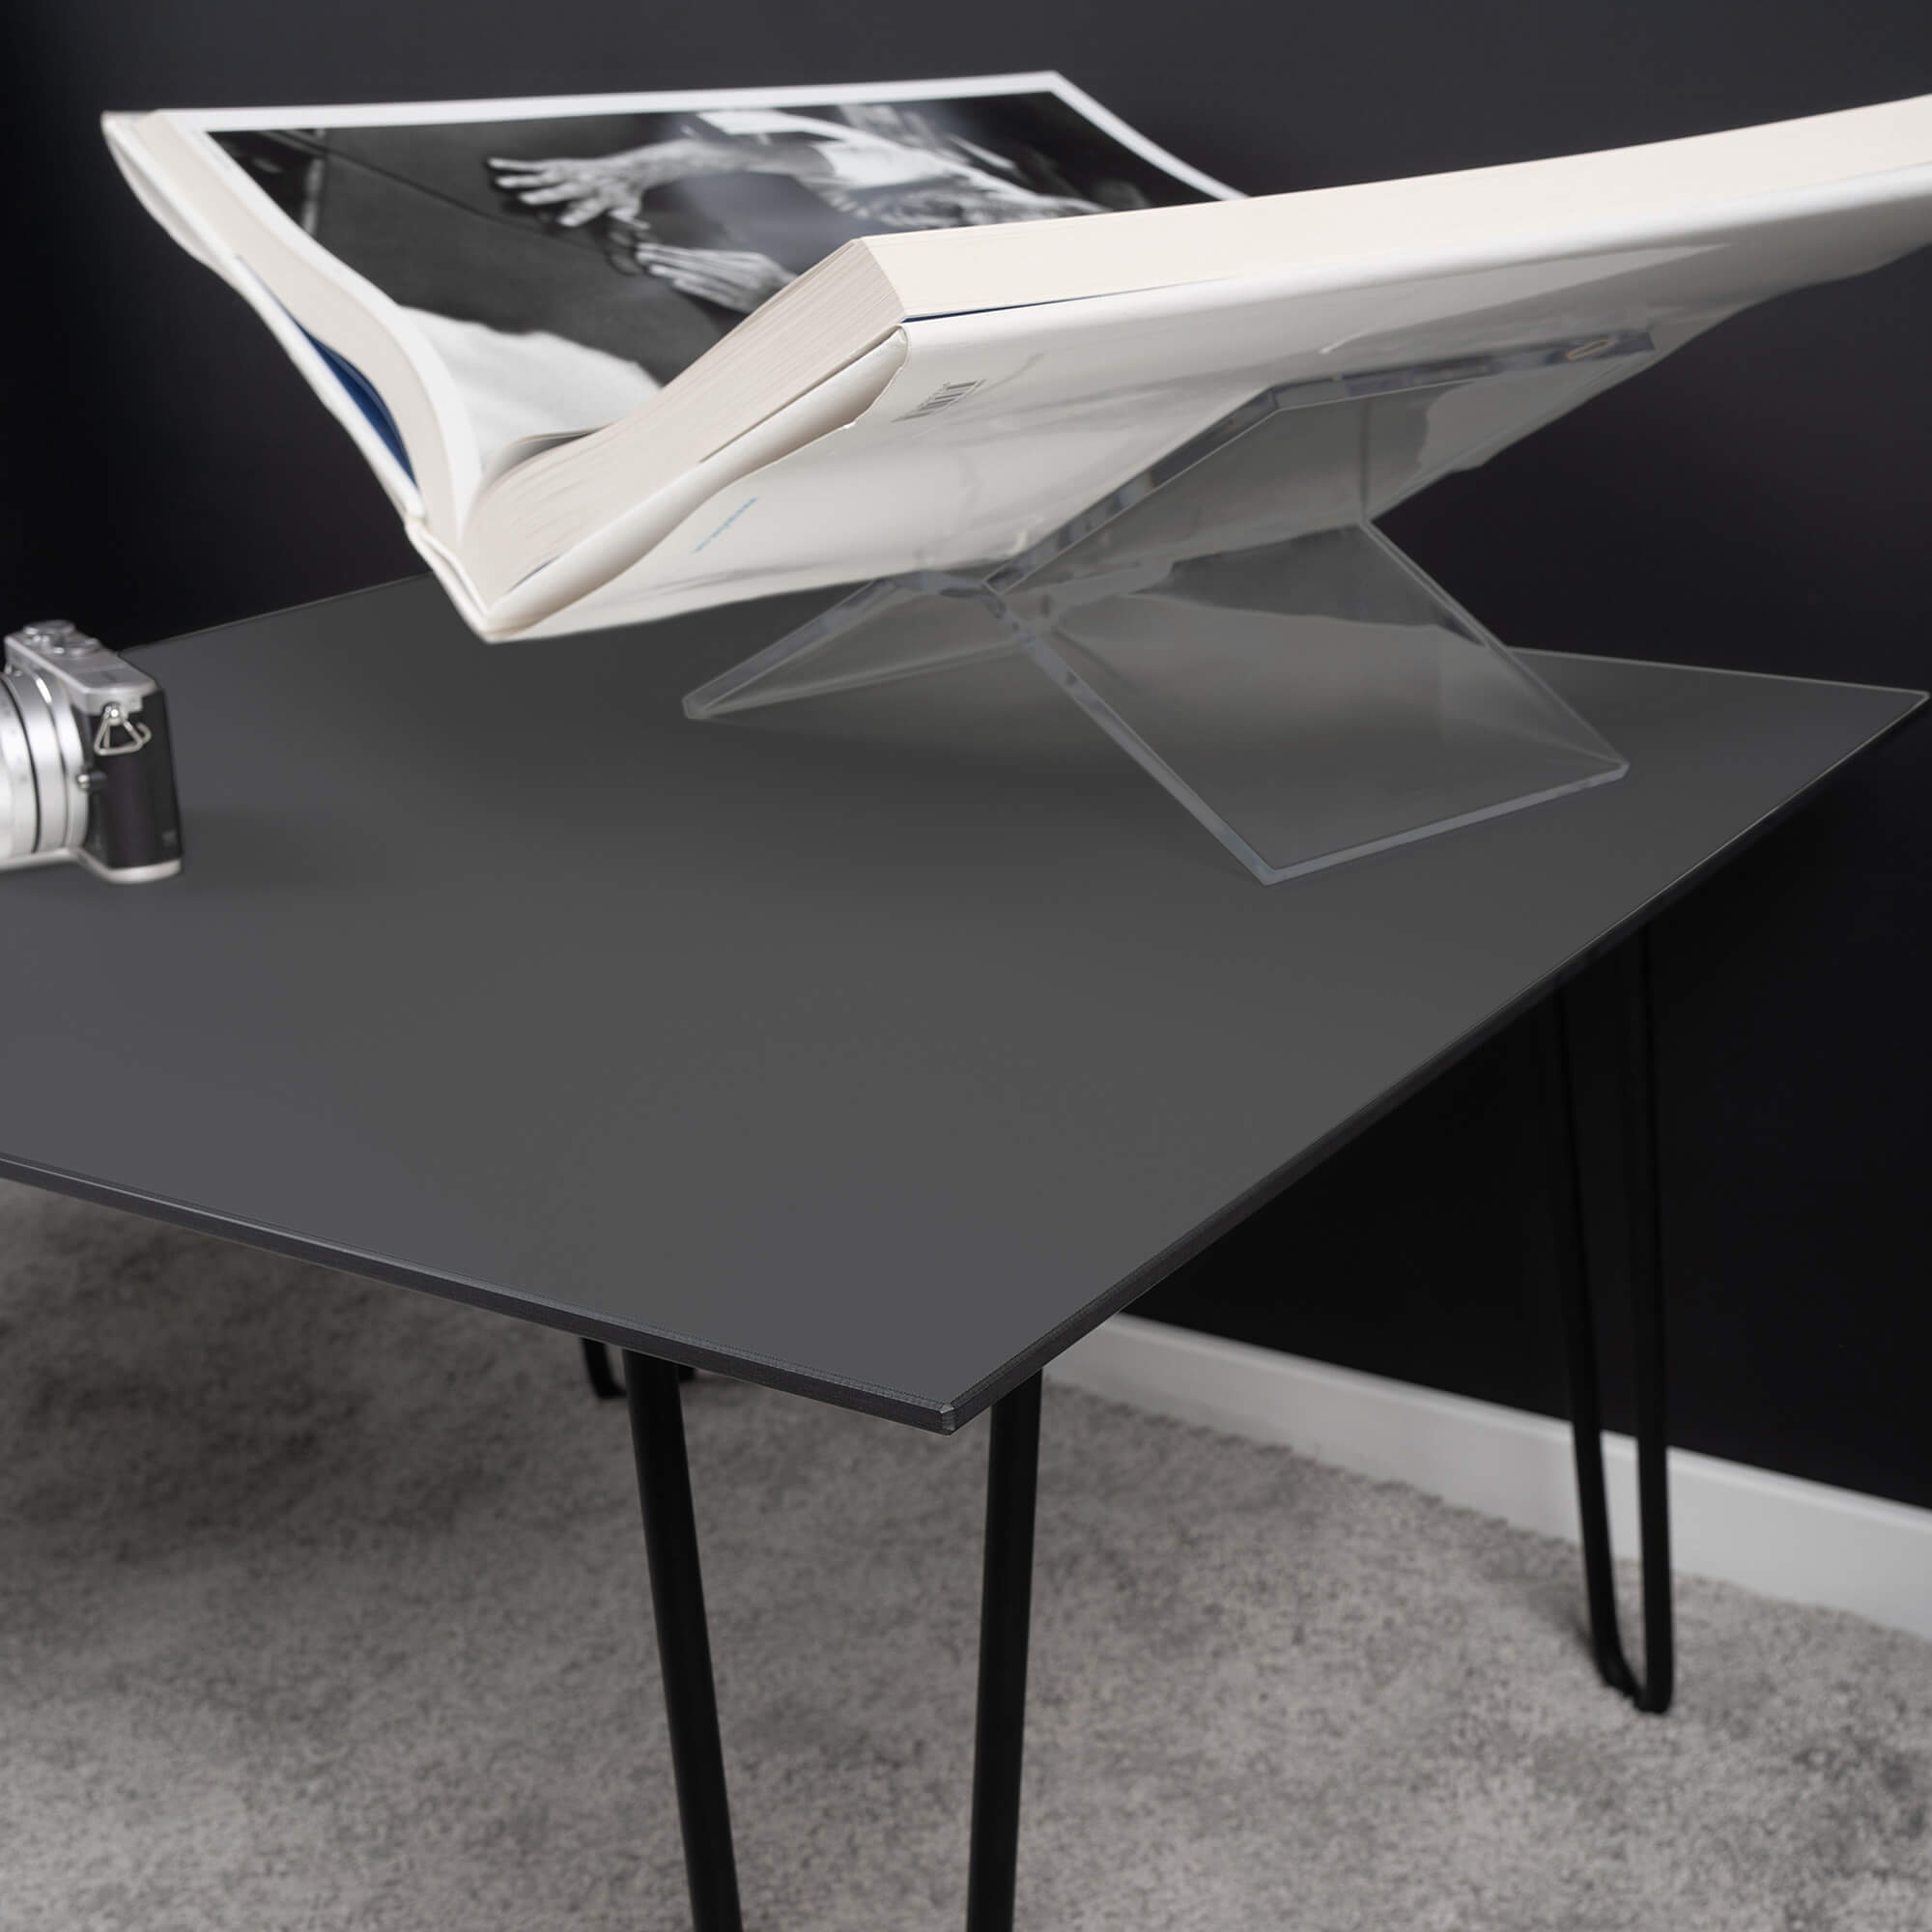 Design-Wohnzimmer-Couchtisch-klein-Tisch-anthrazit-schwarz